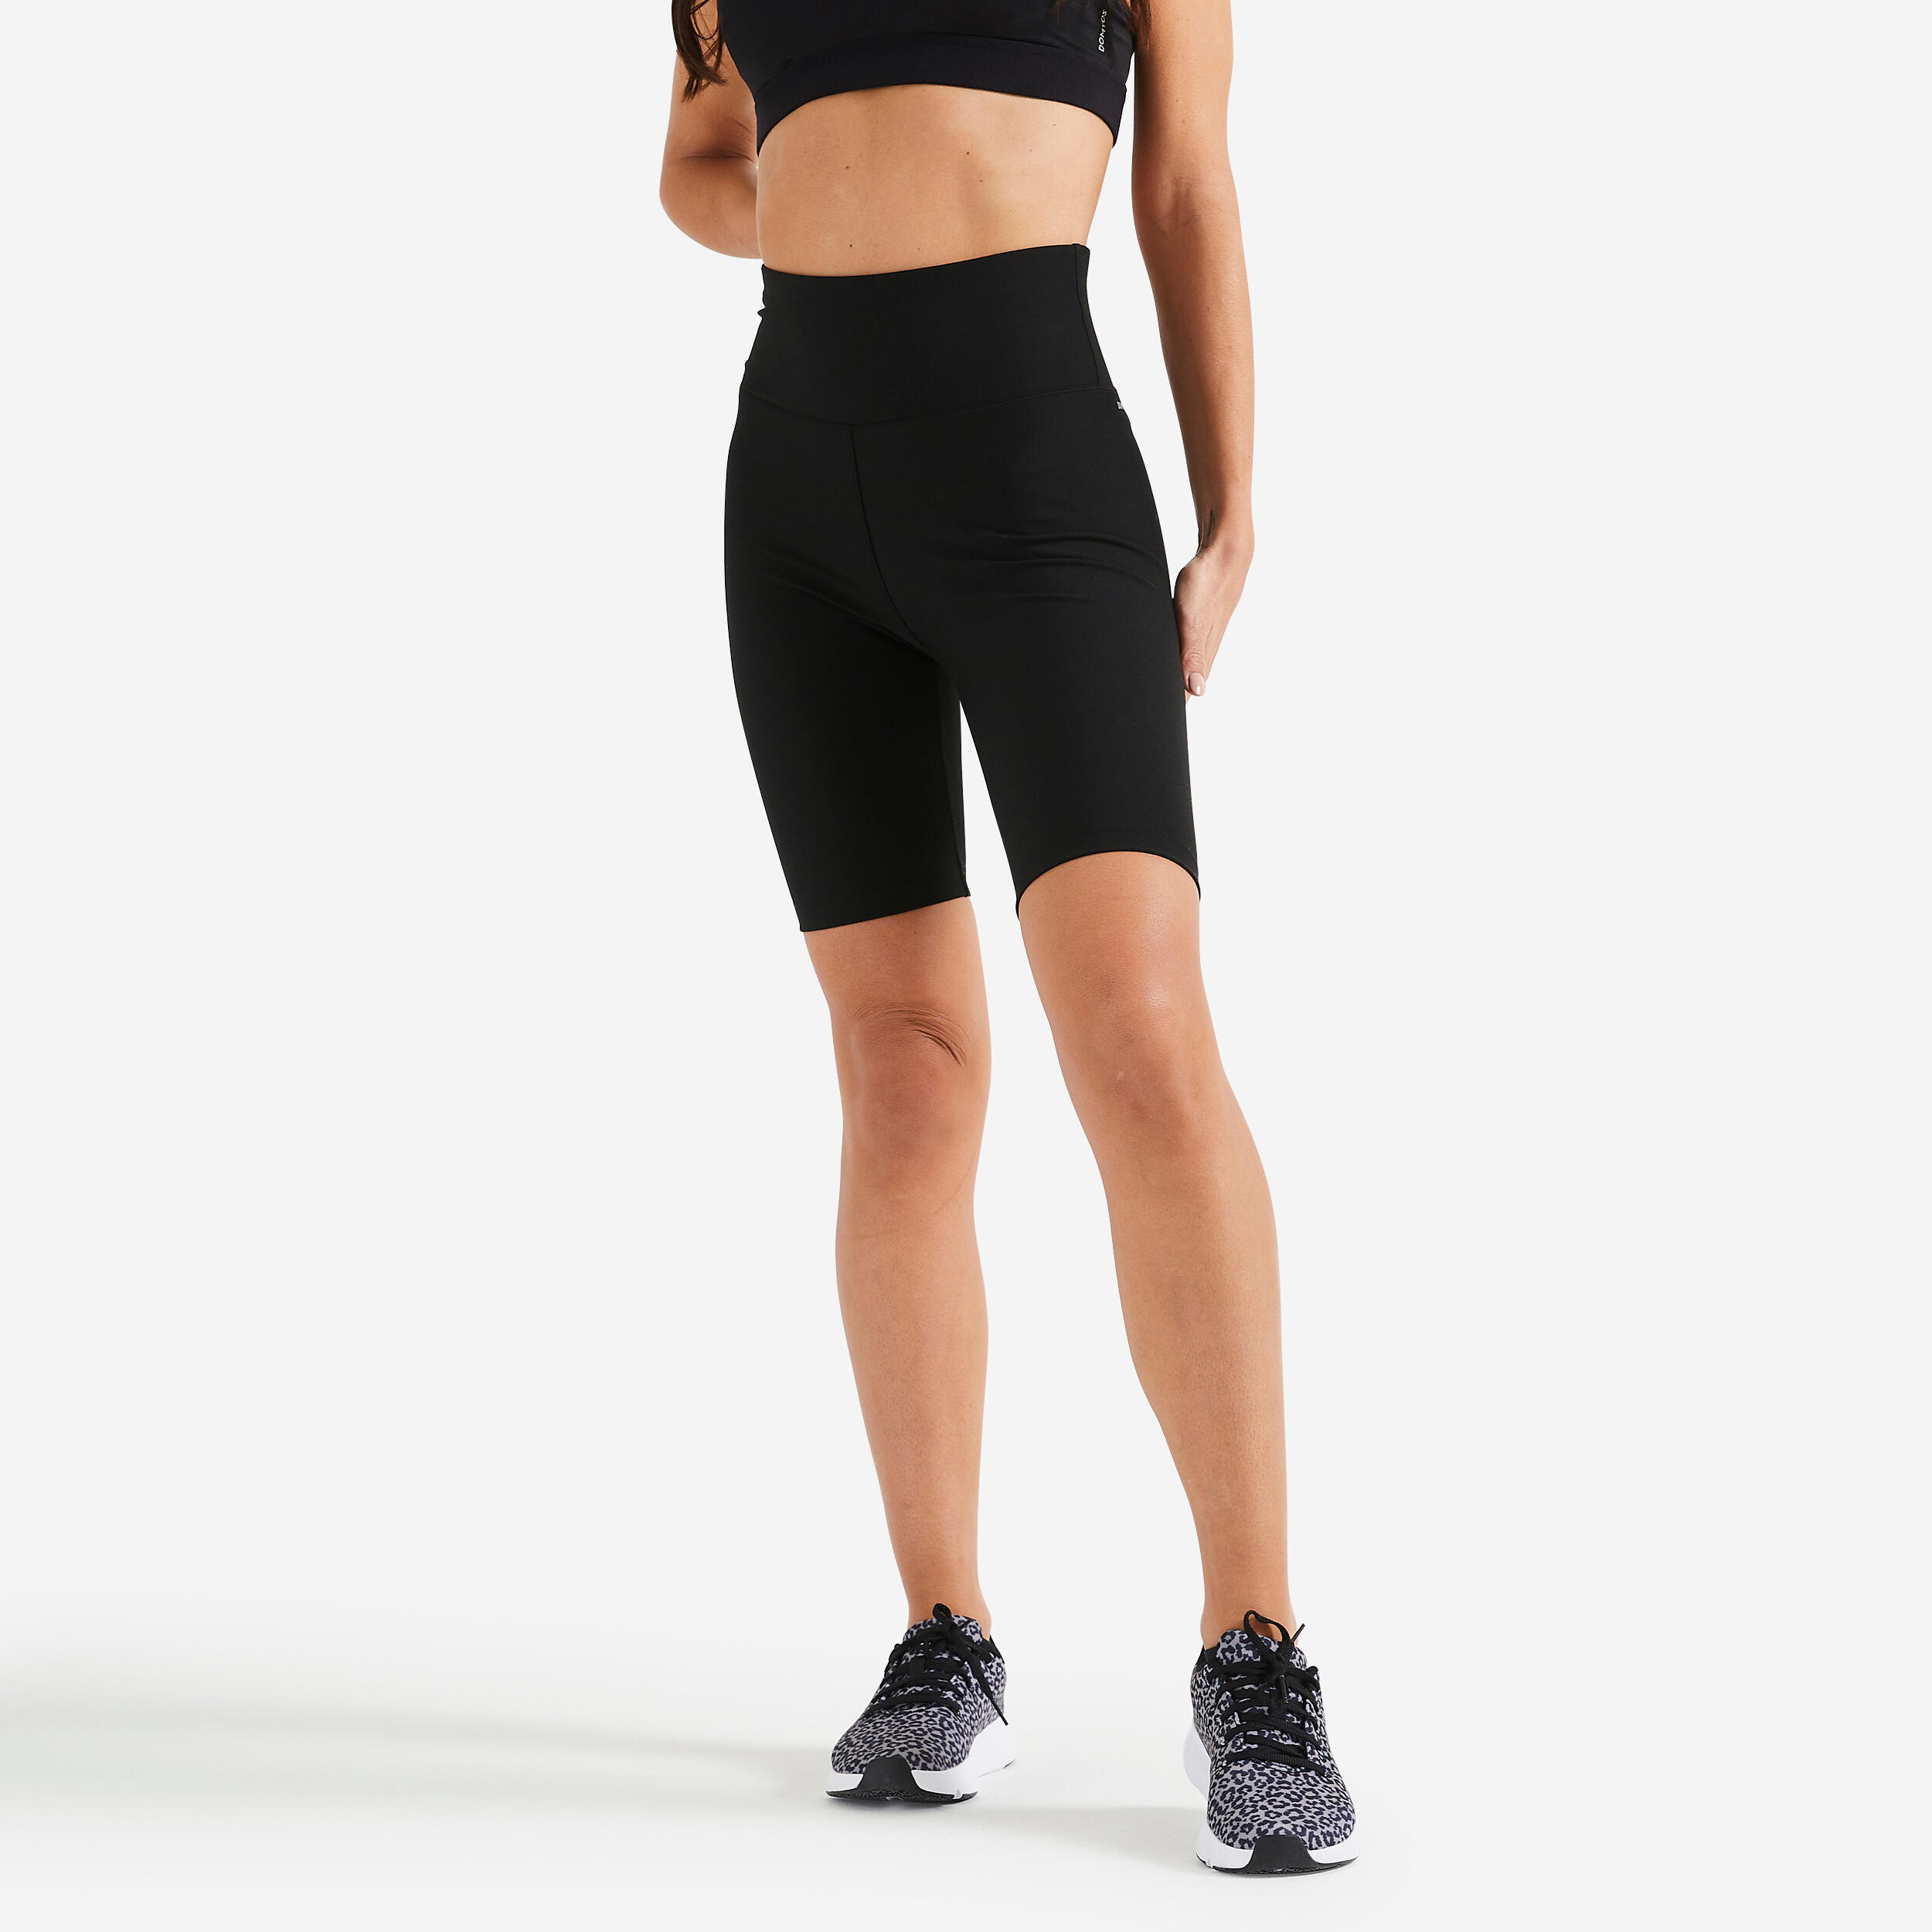 CAMPSNAIL 3 Pack High Waisted Biker Shorts for Women – 5 Buttery